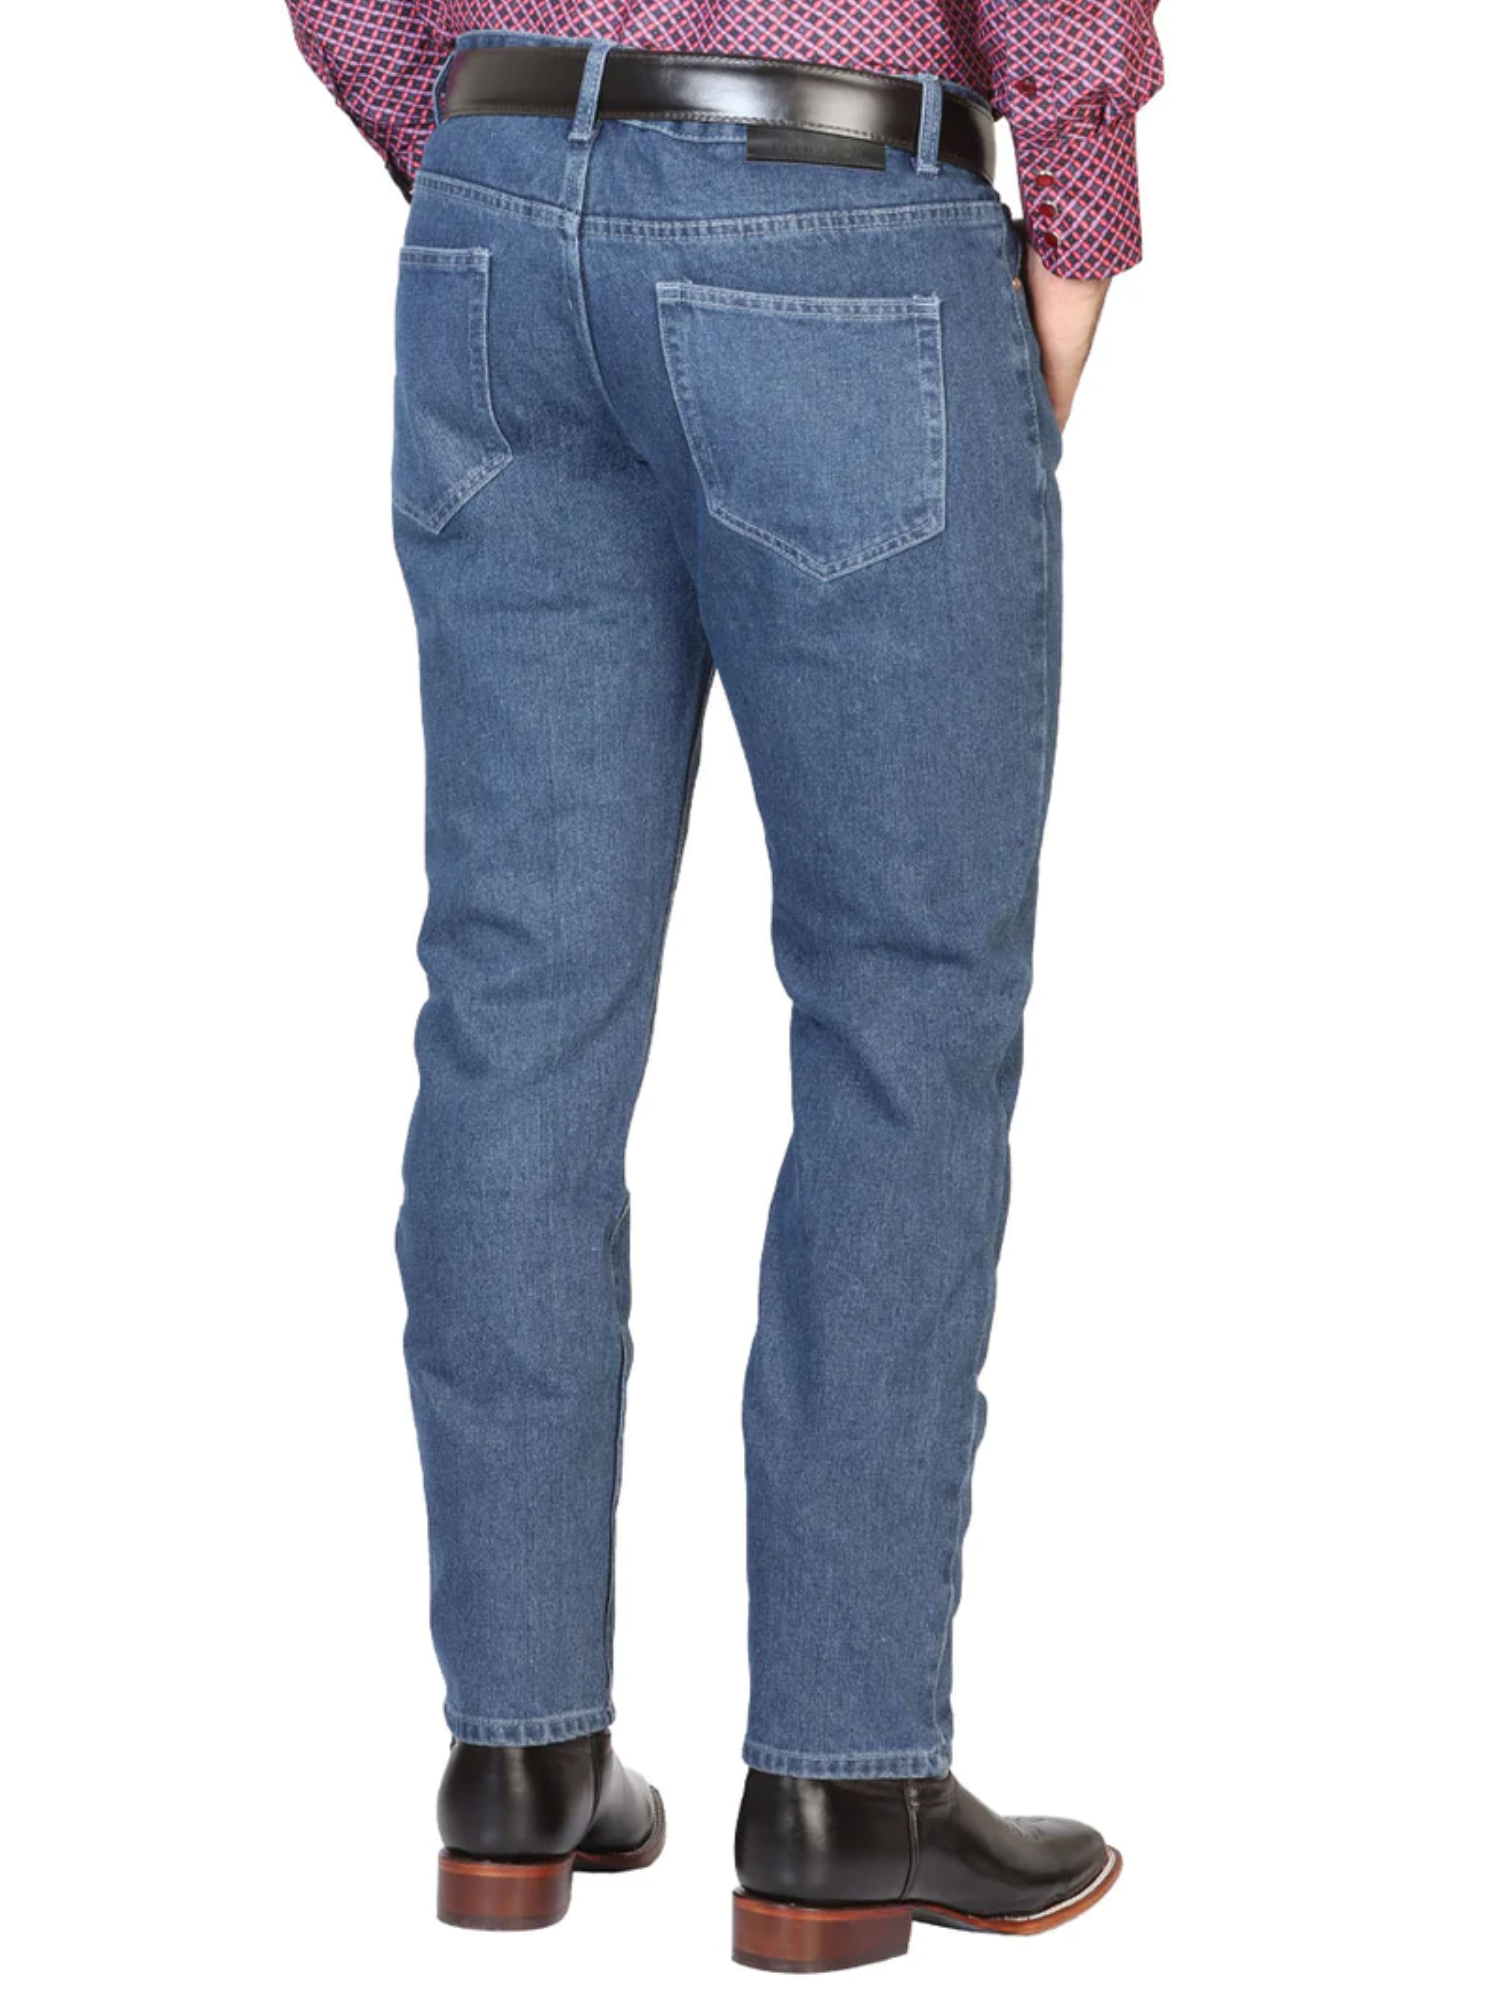 Pantalon de Mezclilla Casual Azul Claro para Hombre 'El General' - ID: 41331 Denim Jeans El General 